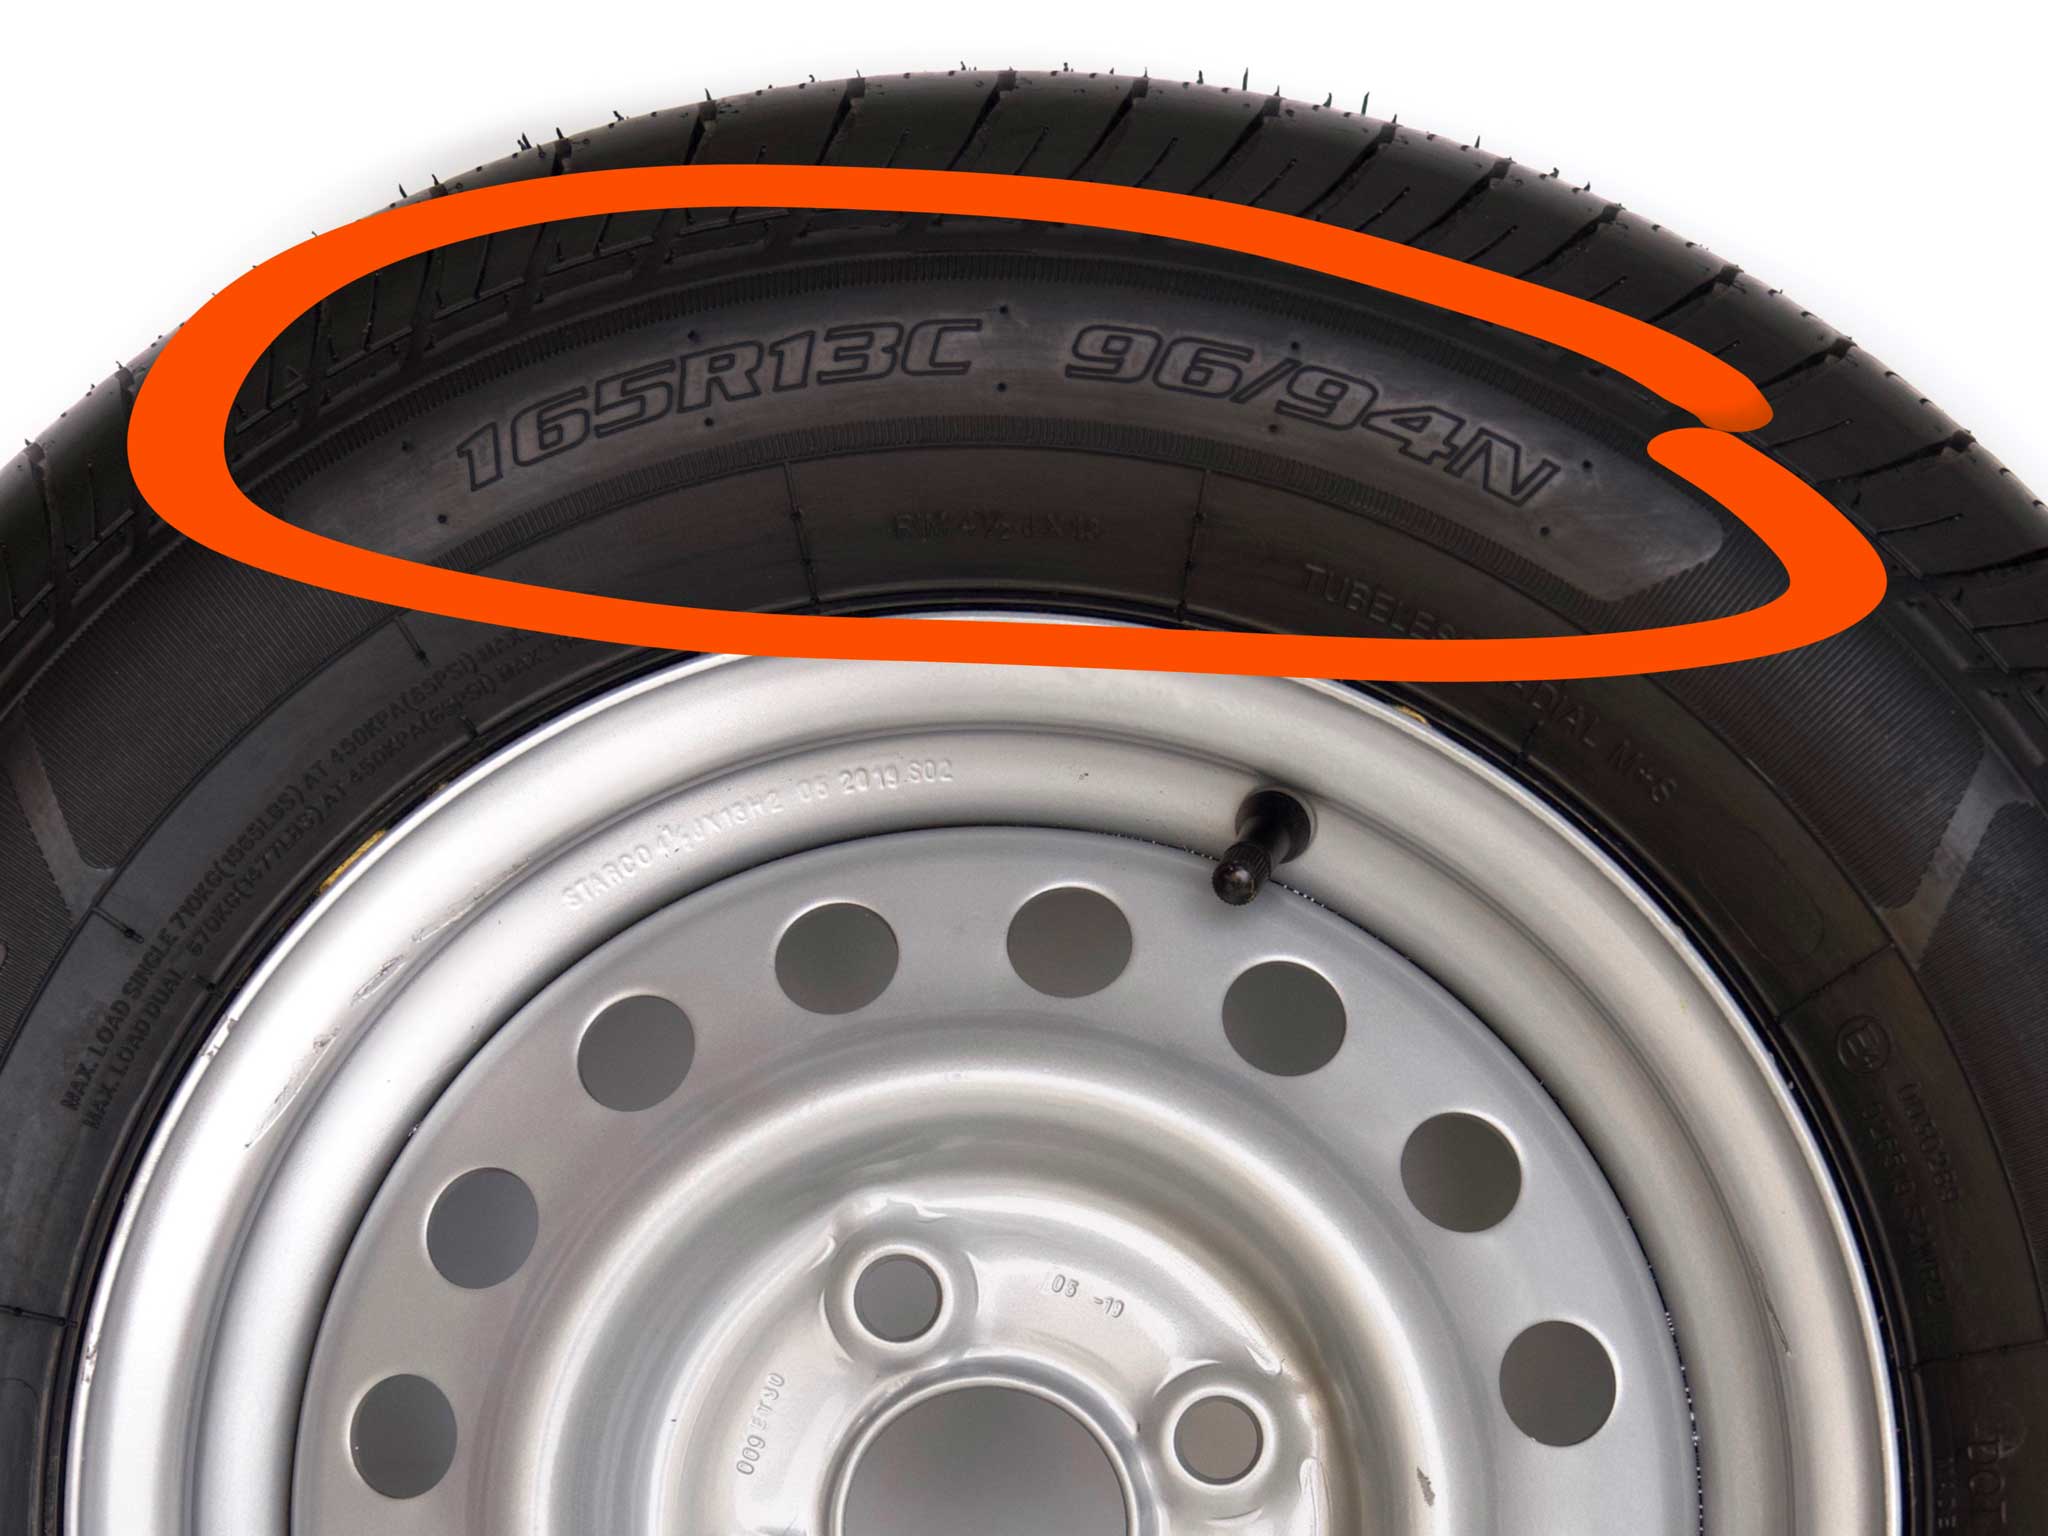 Produktfinder > Suche  mit Reifengröße